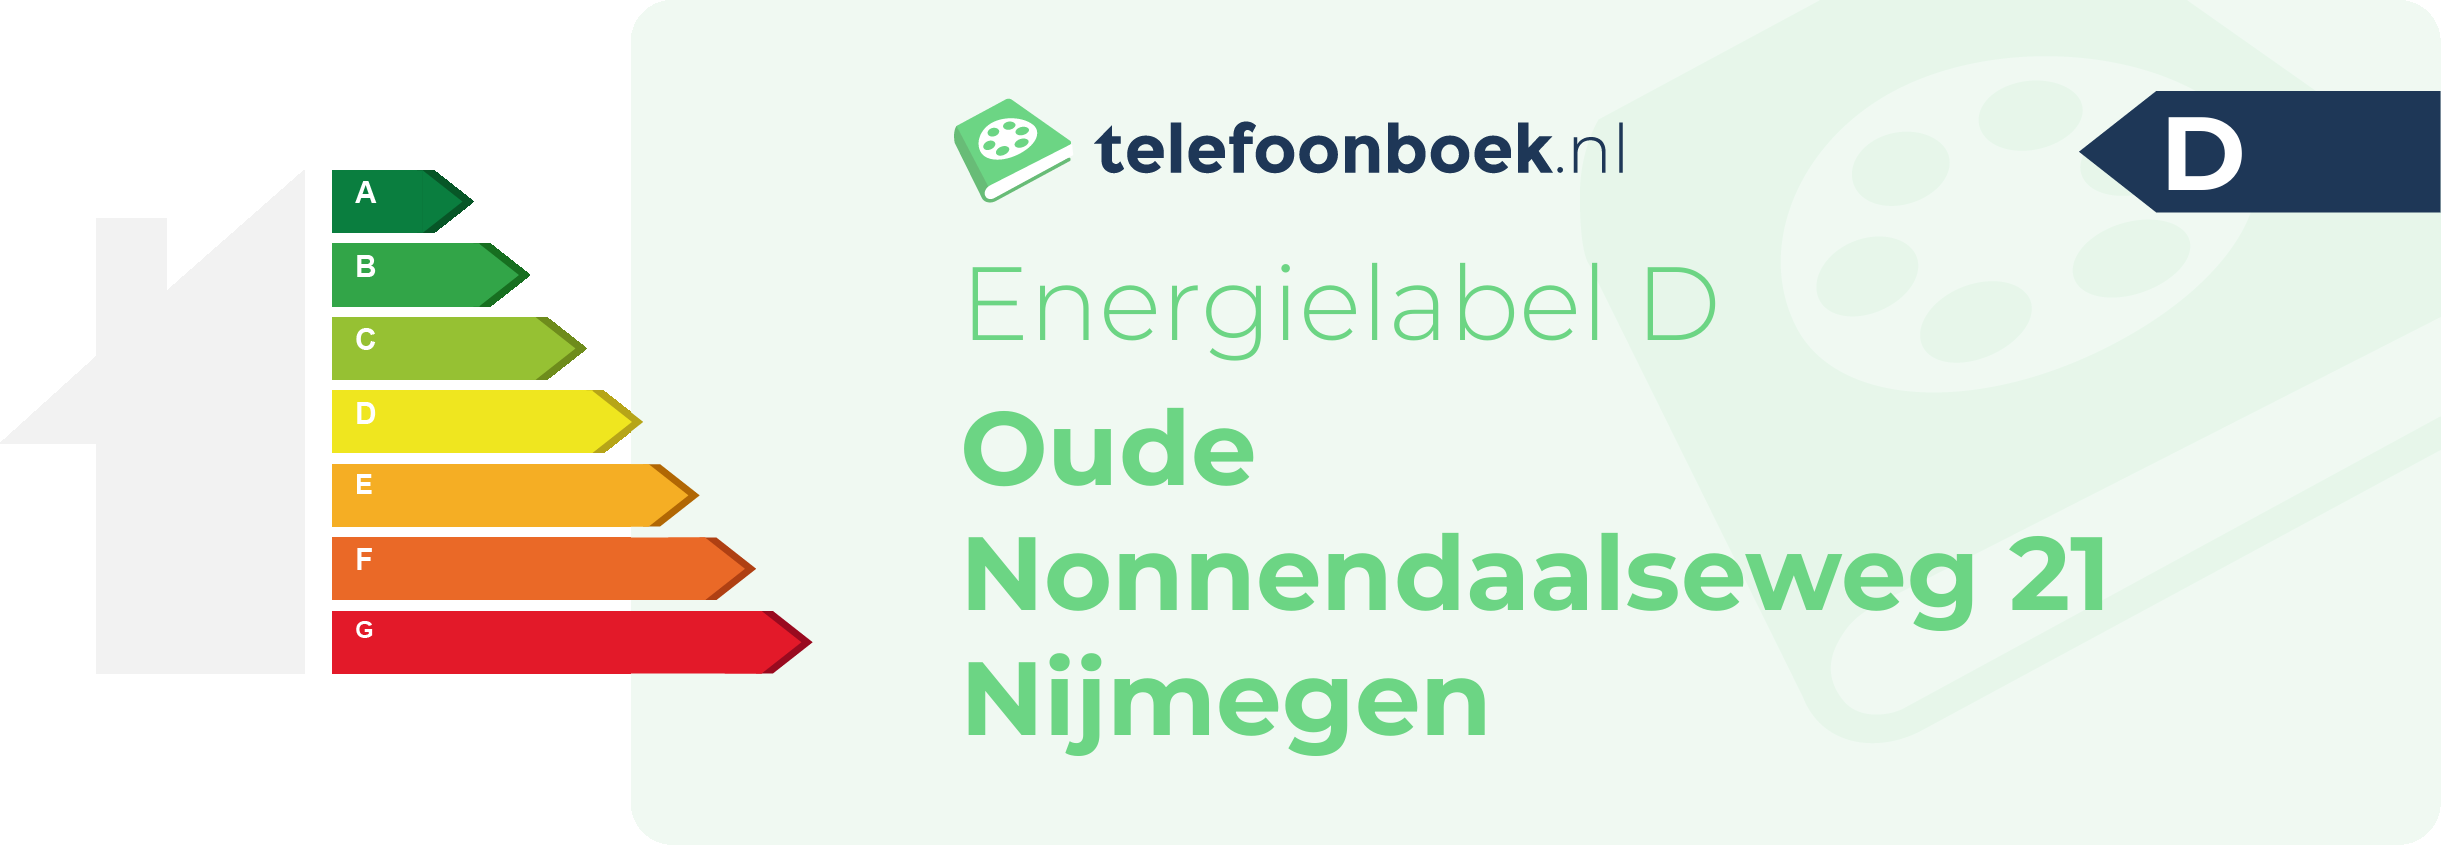 Energielabel Oude Nonnendaalseweg 21 Nijmegen